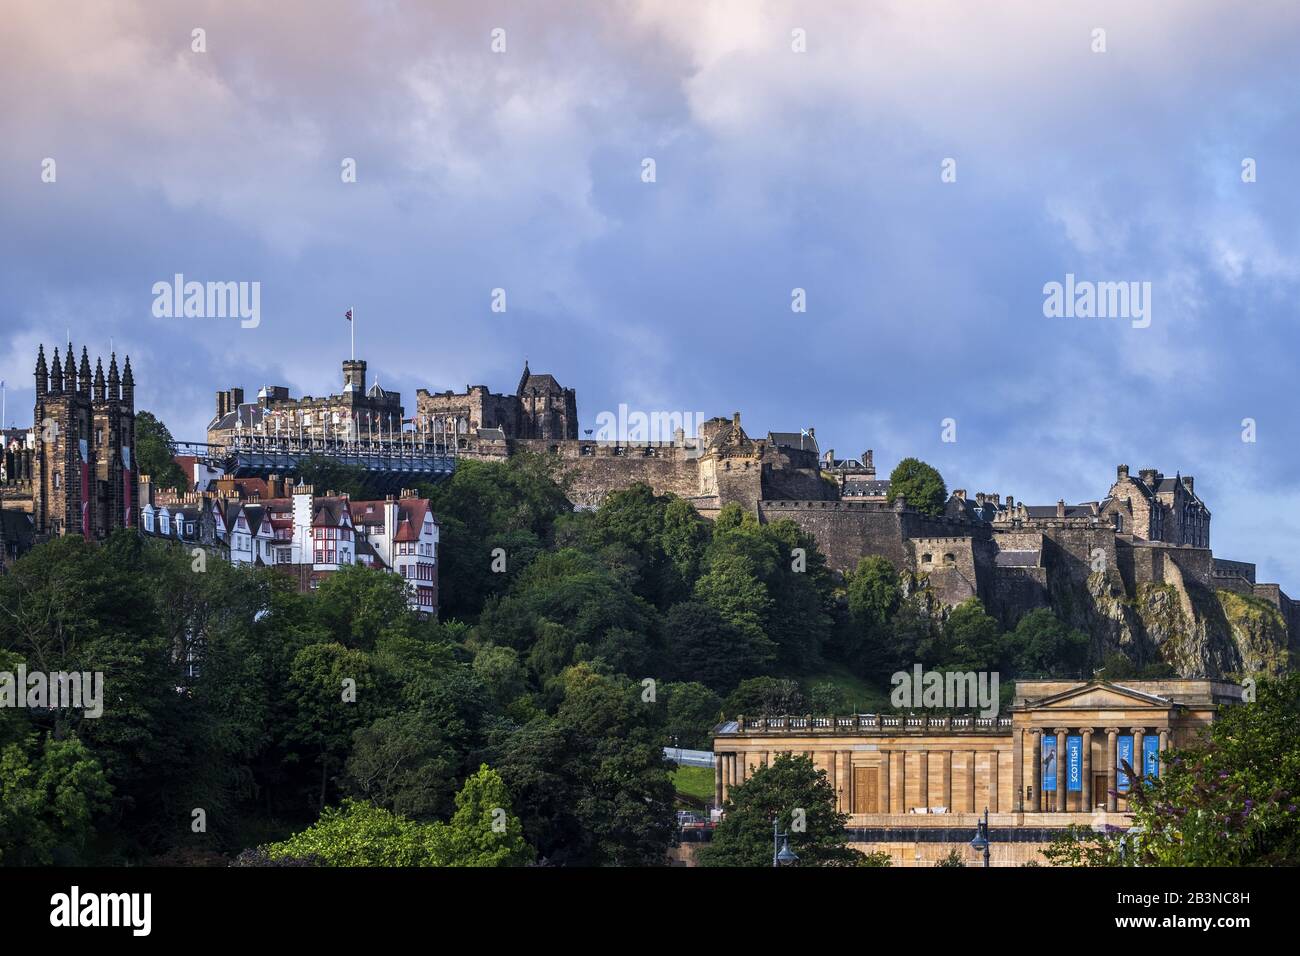 Blick auf die historische Skyline von Edinburgh mit der Burg und den Türmen der St. Giles' Cathedral (The High Kirk), Edinburgh, Schottland, United Kingd Stockfoto